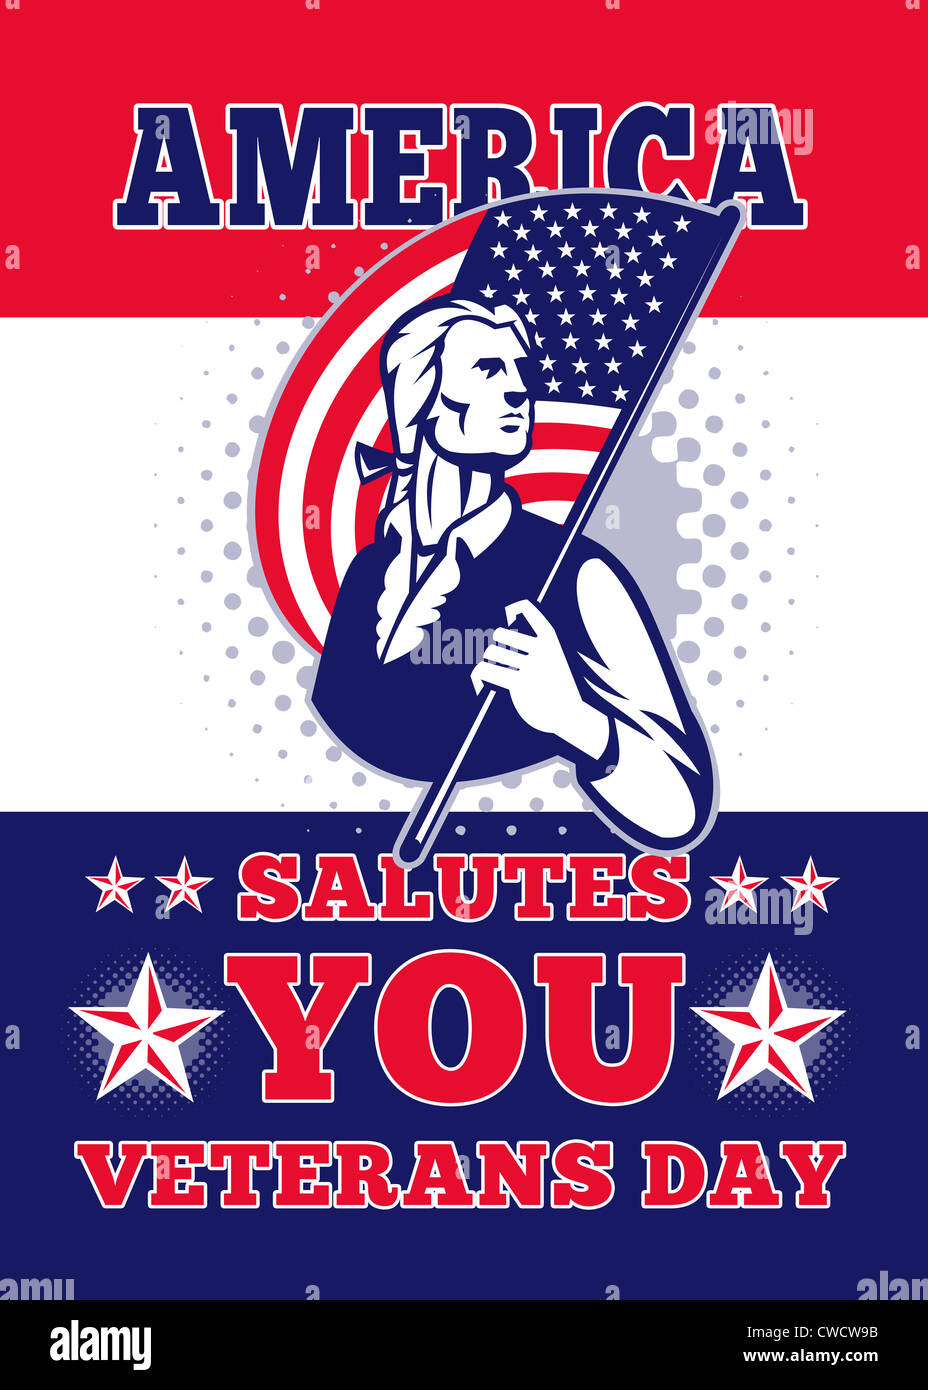 Carte de vœux de l'affiche illustration d'un soldat révolutionnaire minuteman patriot tenant un drapeau américain stars and stripes Banque D'Images